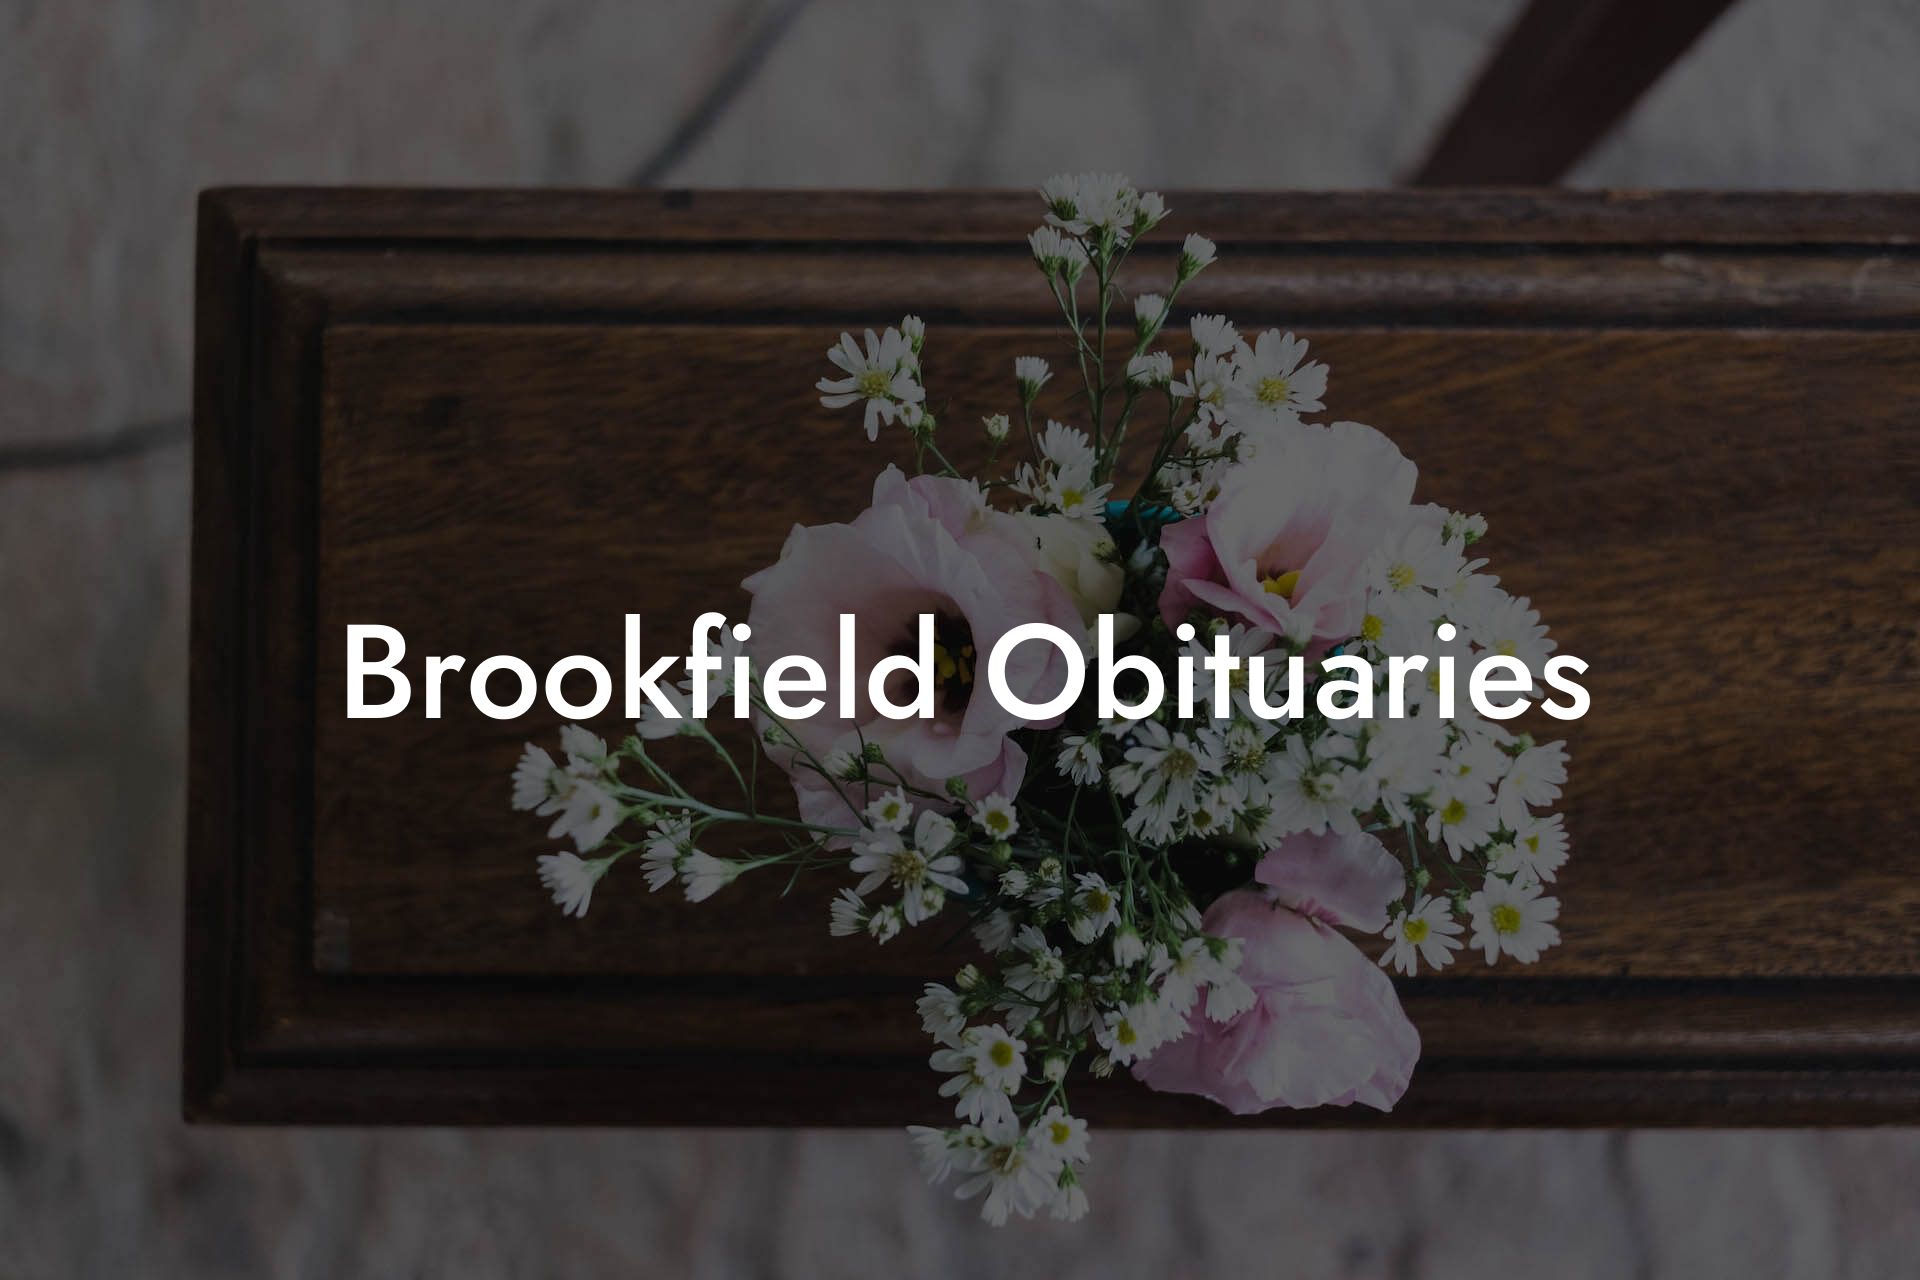 Brookfield Obituaries